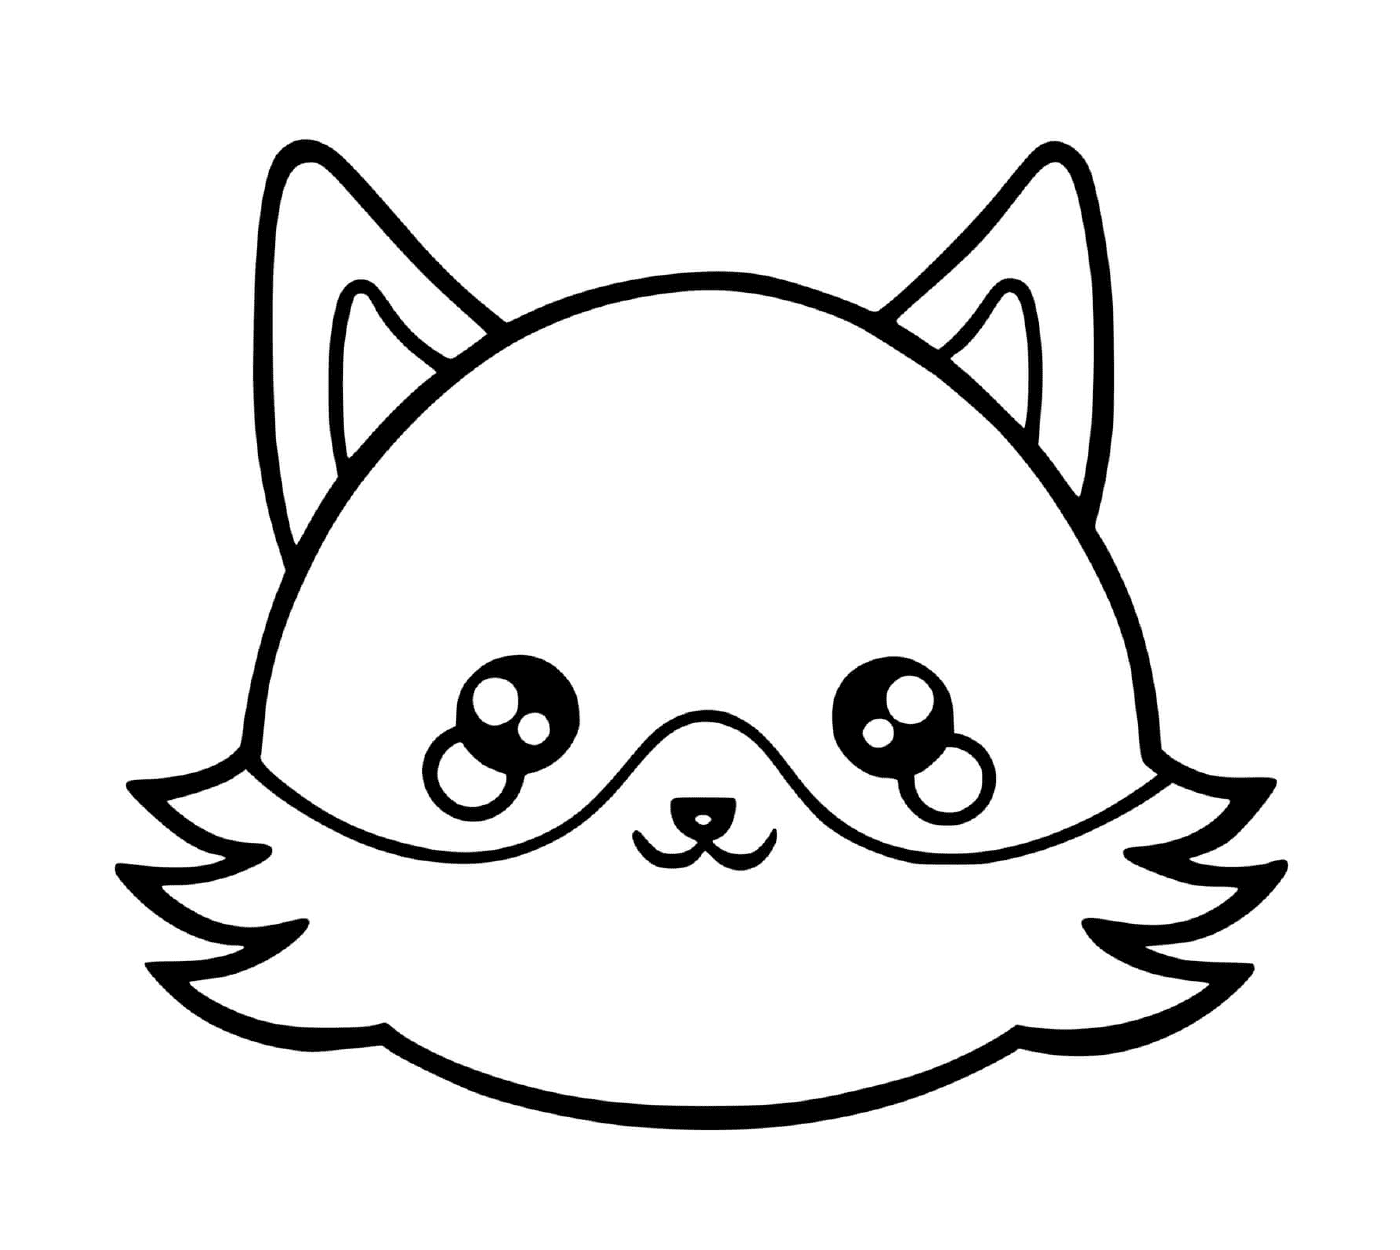  Una volpe con una faccia da gatto disegnata sopra 